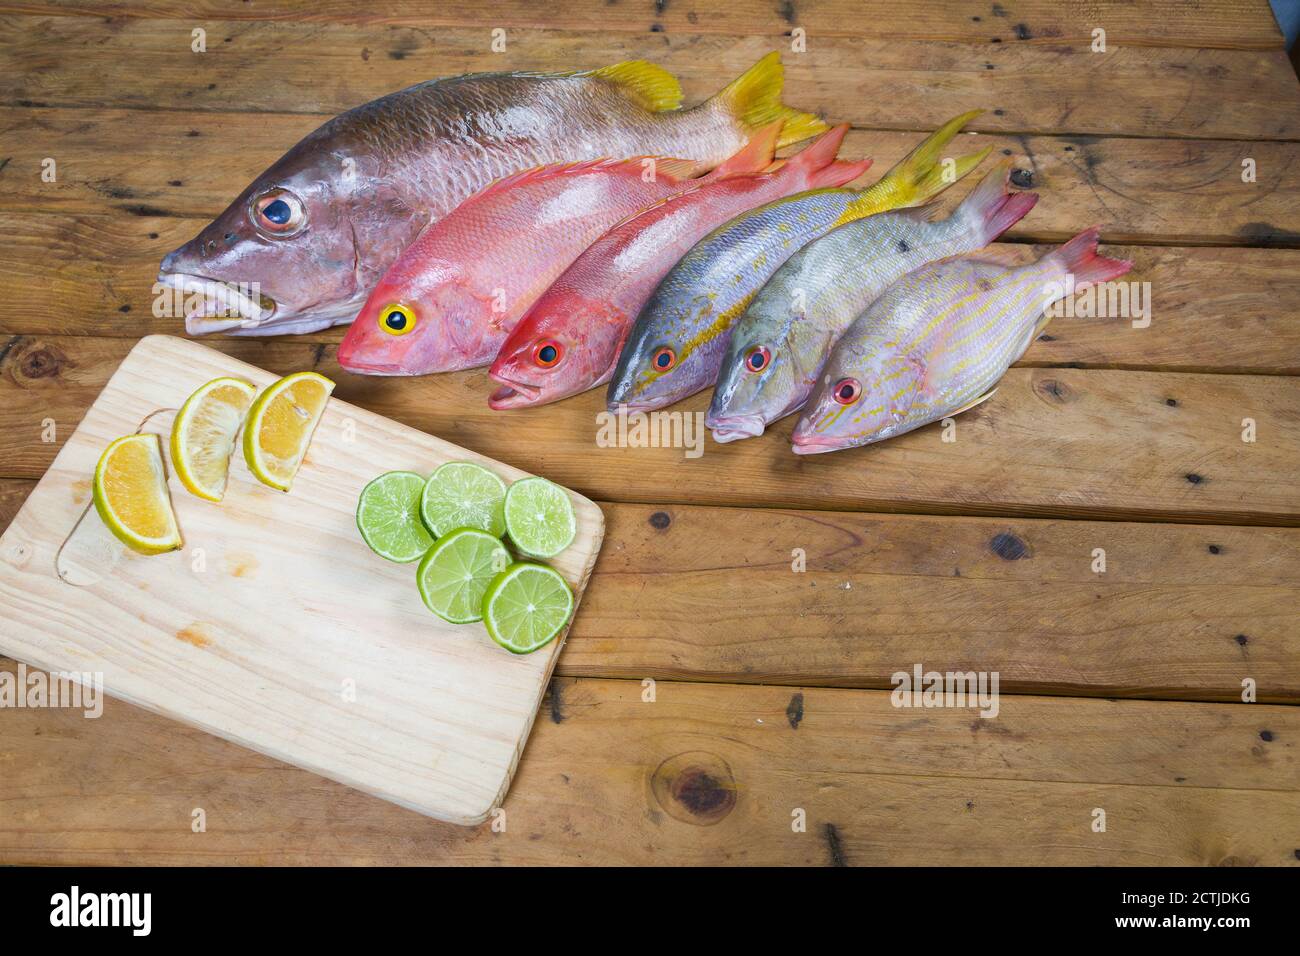 Poisson frais des Caraïbes, fruits de mer sur une ancienne table en bois. Vue de dessus. Gros plan. Banque D'Images